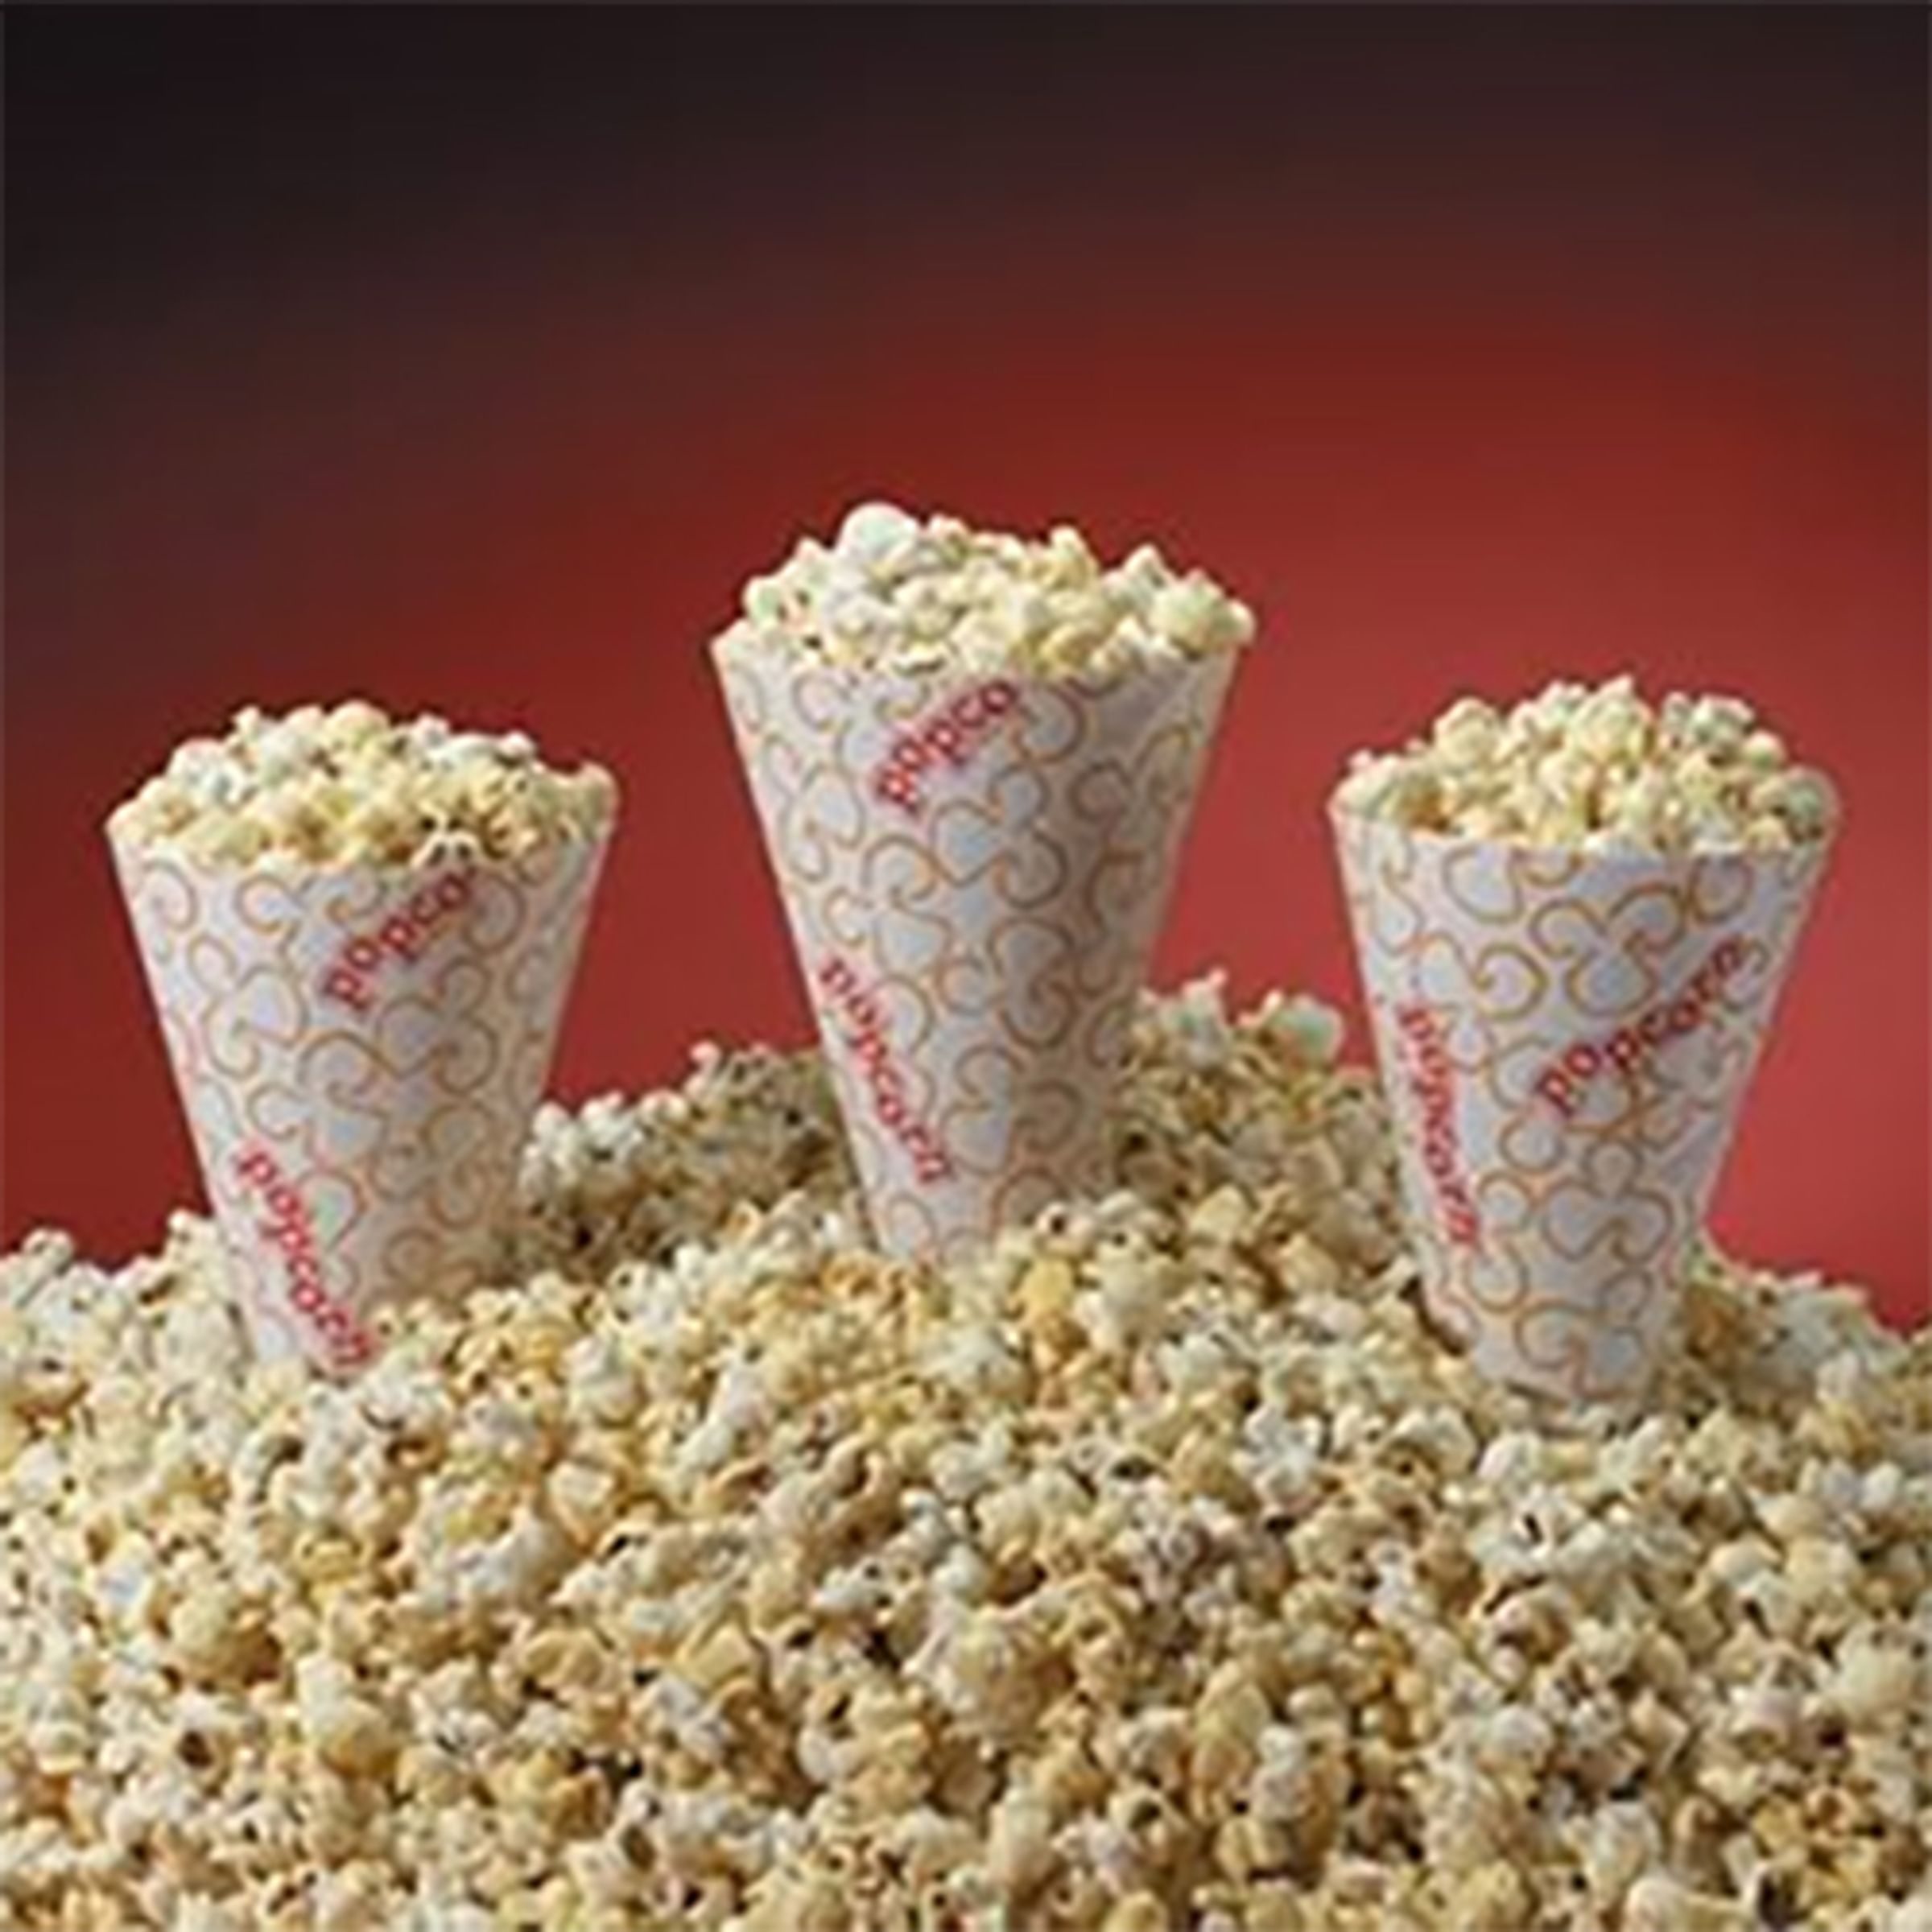 Popcornstrutar i Papper - 10-pack